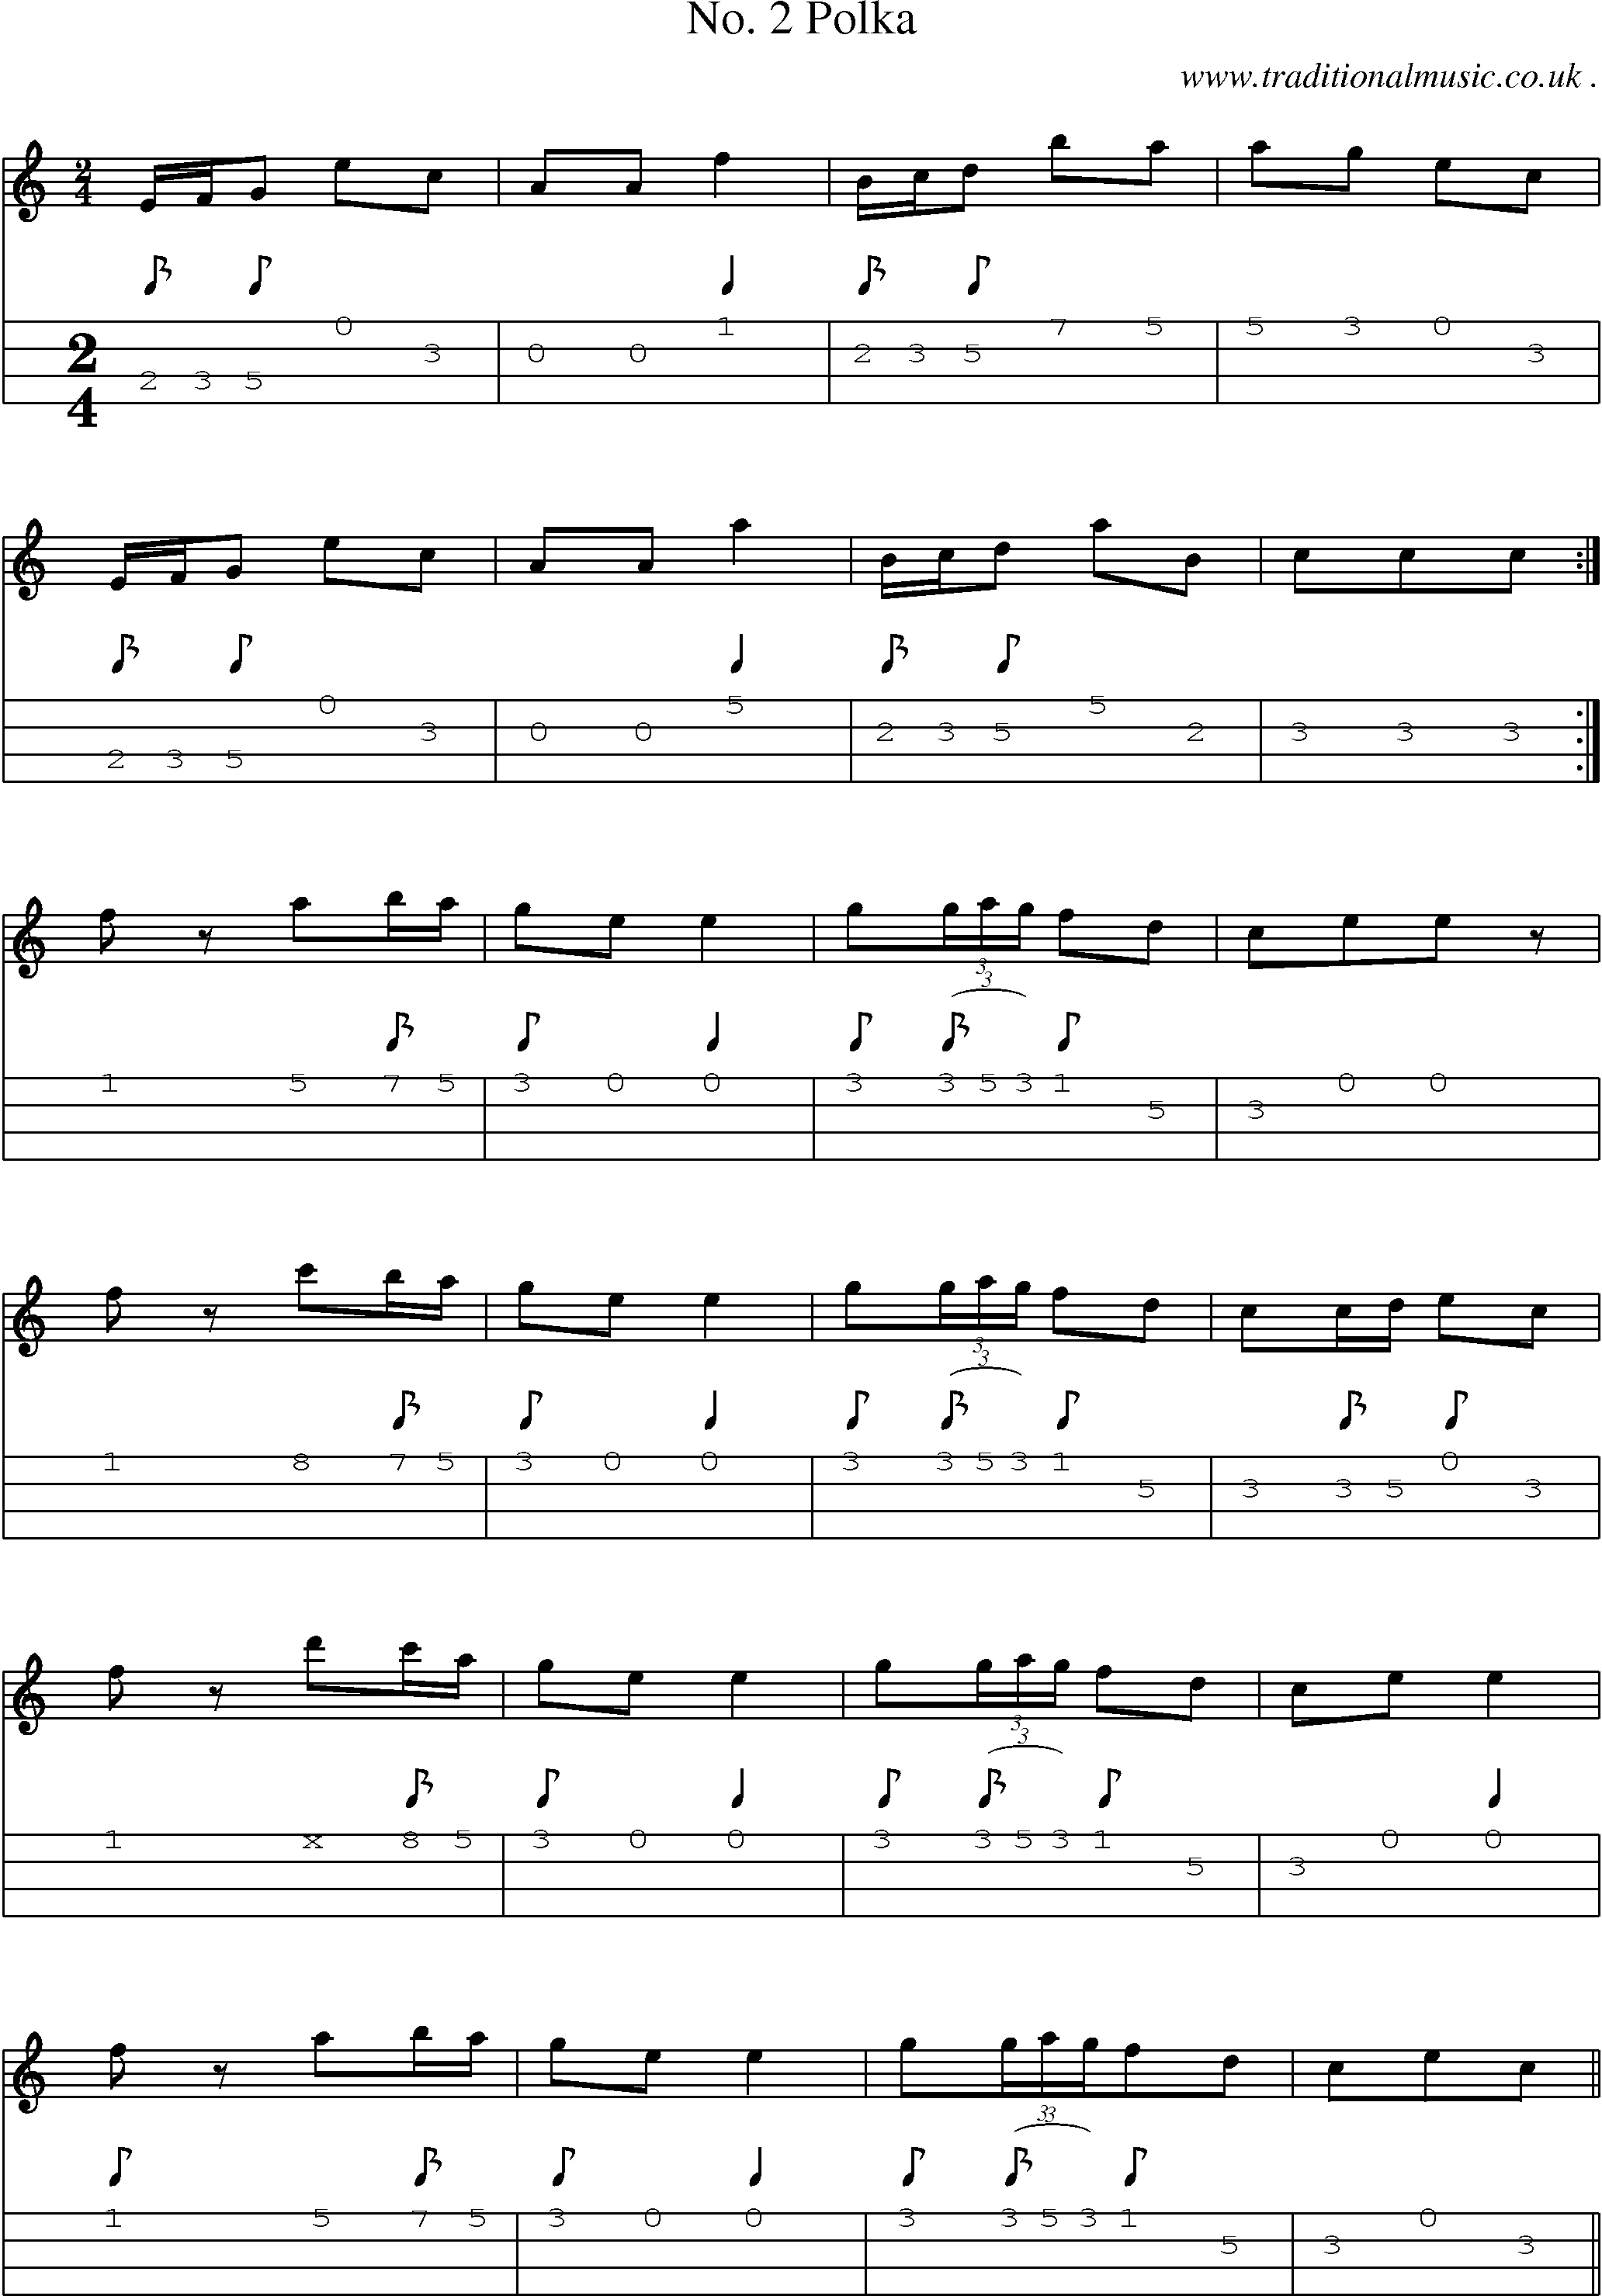 Sheet-Music and Mandolin Tabs for No 2 Polka